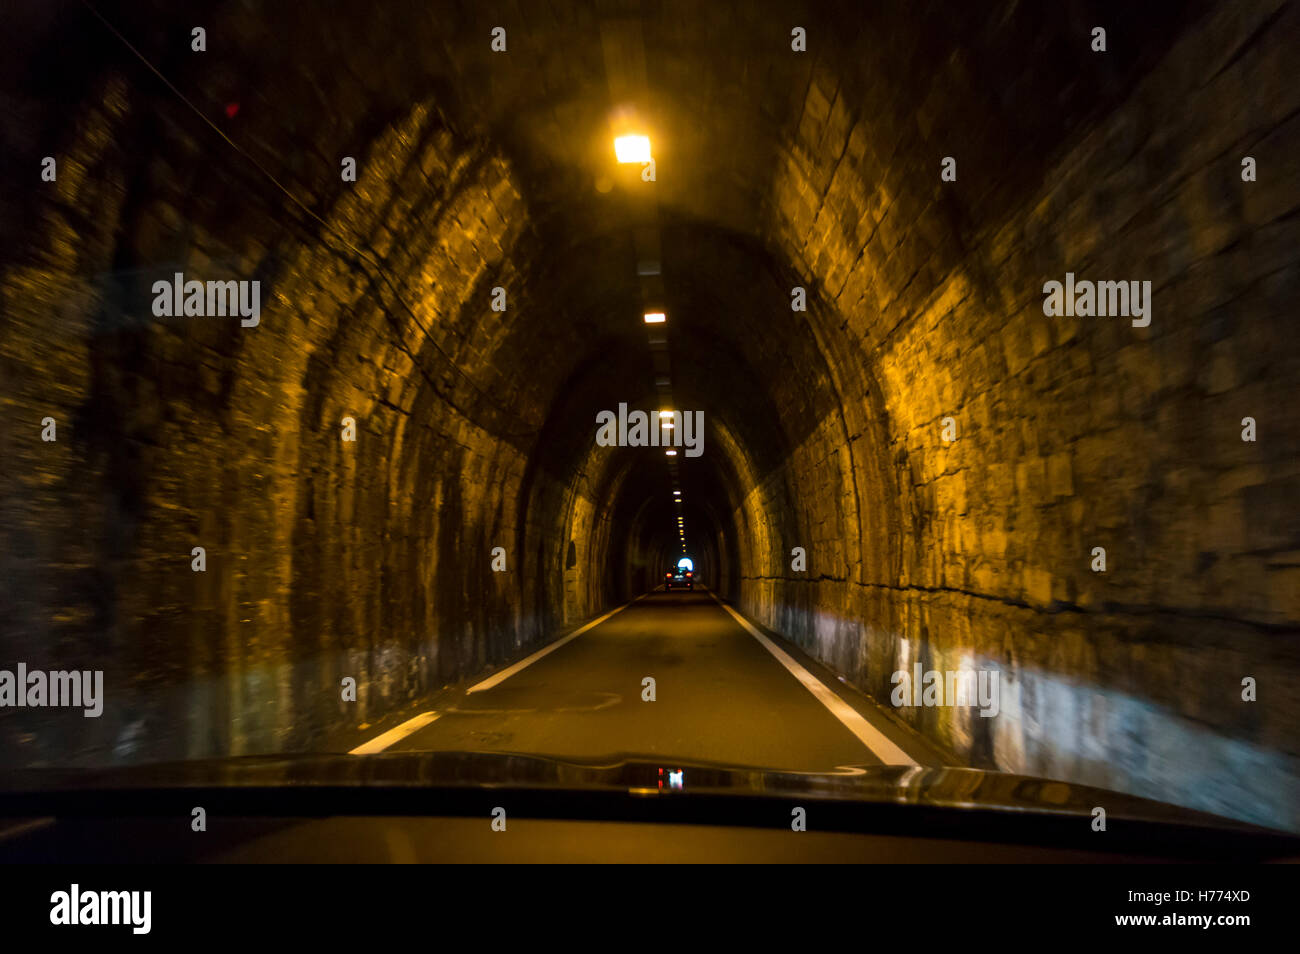 Schmale einspurige Straßentunnel, ursprünglich als Eisenbahntunnel zwischen den italienischen Städten Riva Trigoso und Moneglia, Ligurien. Stockfoto